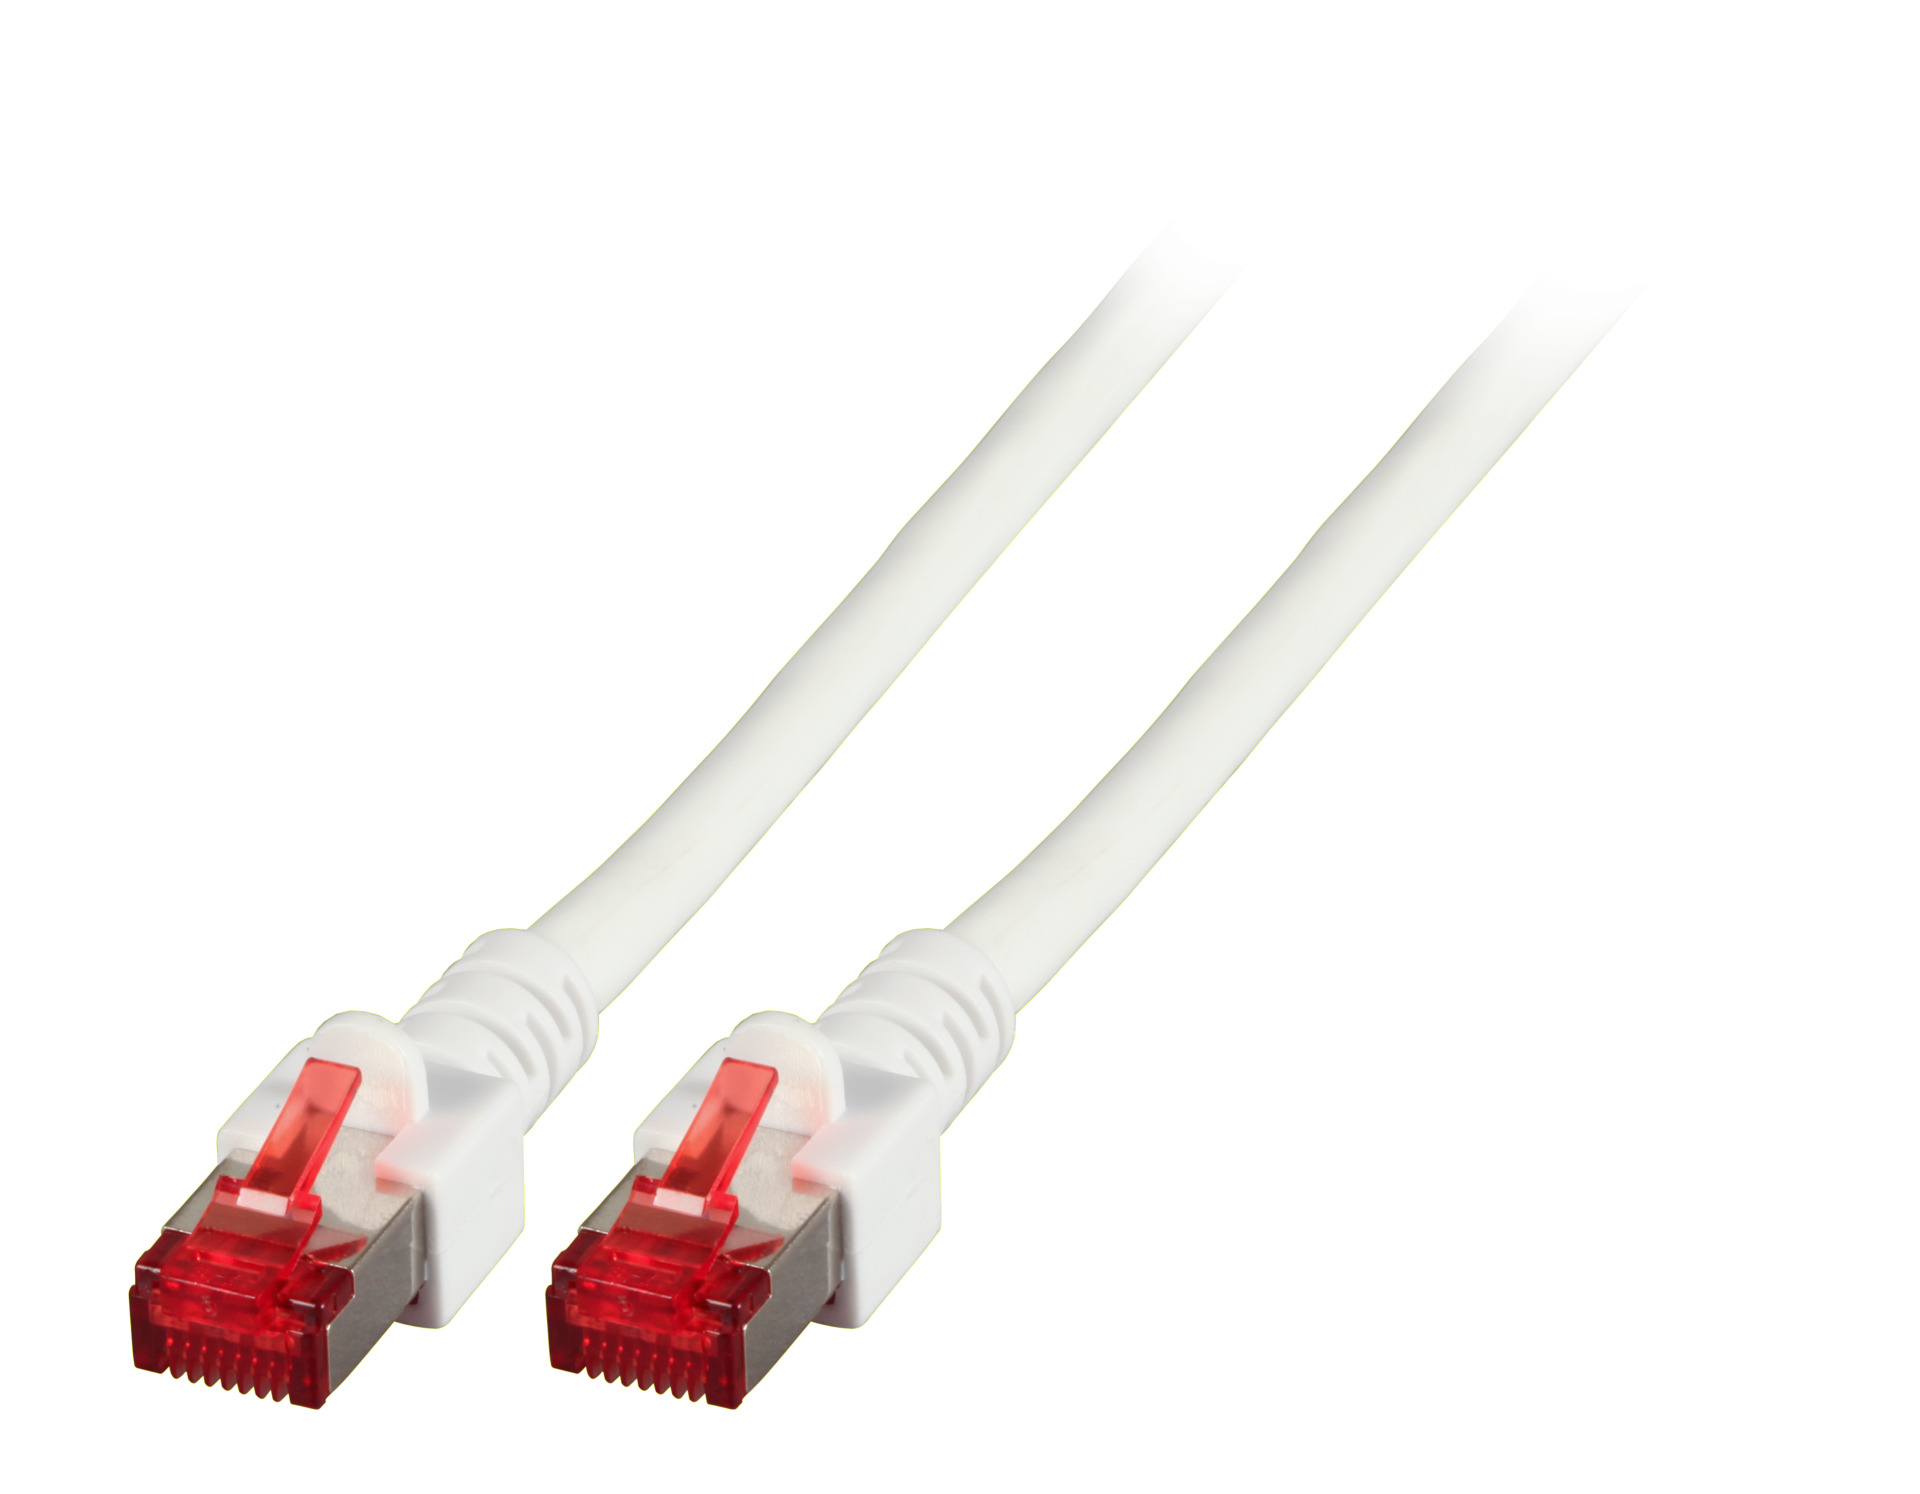 RJ45 Patch cable S/FTP, Cat.6, LSZH, 1m, white